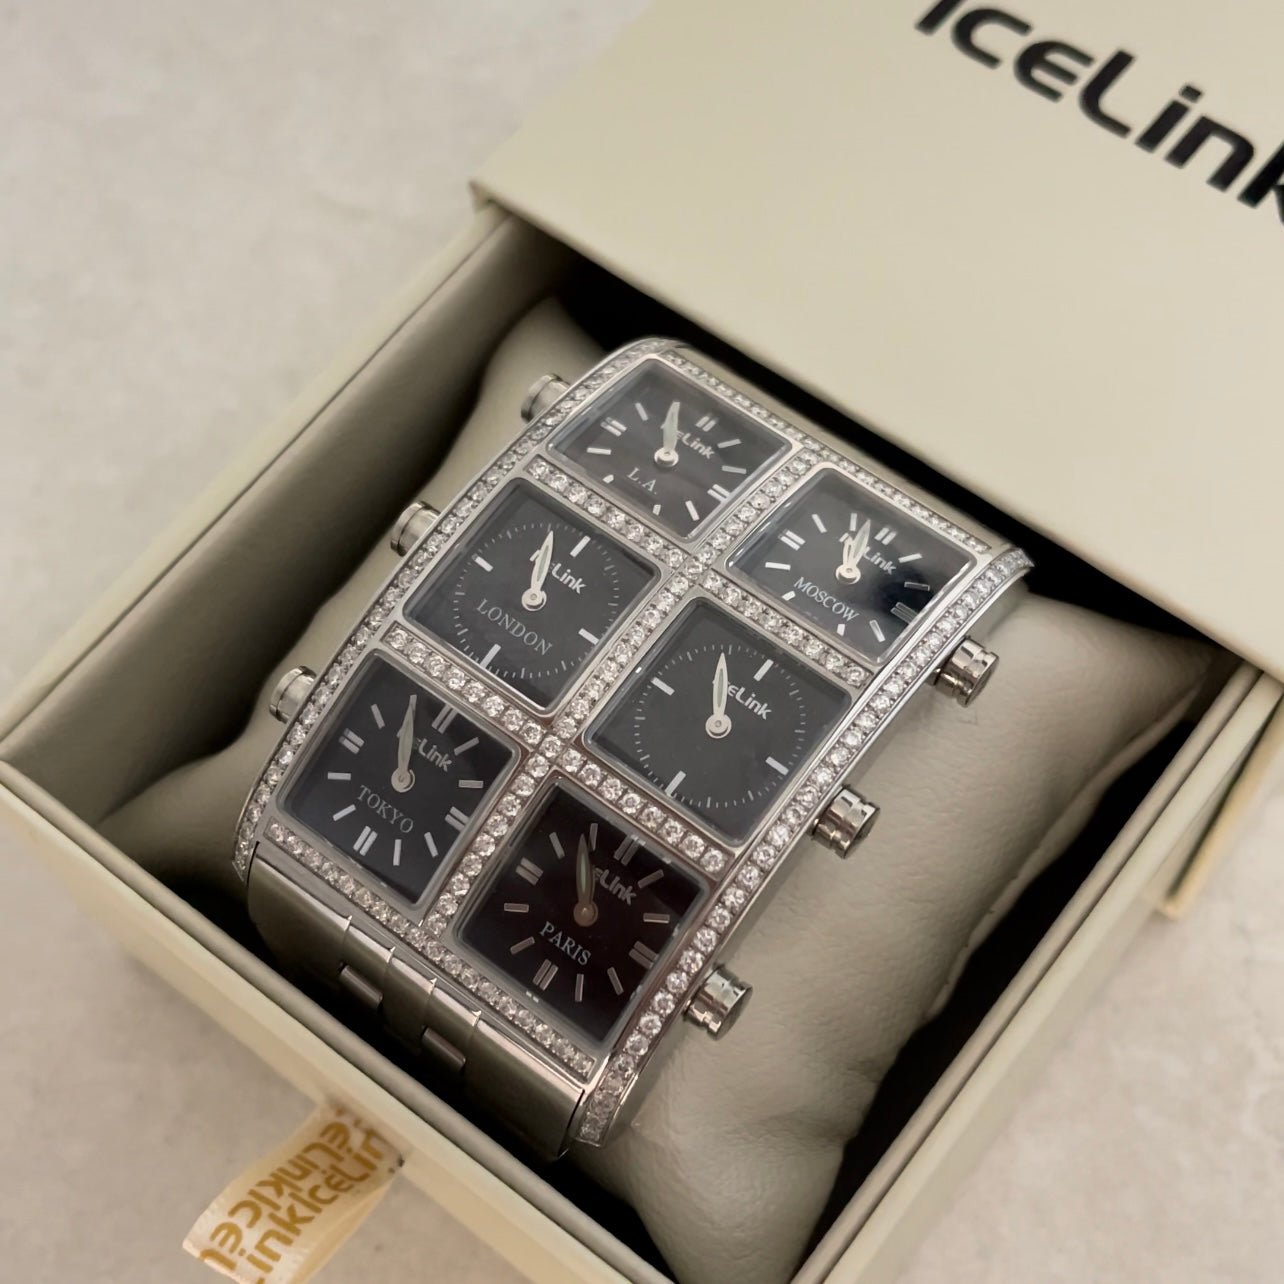 Ziya Diamond 6TZ Watch (Sample Sale) Presidential IceLink   